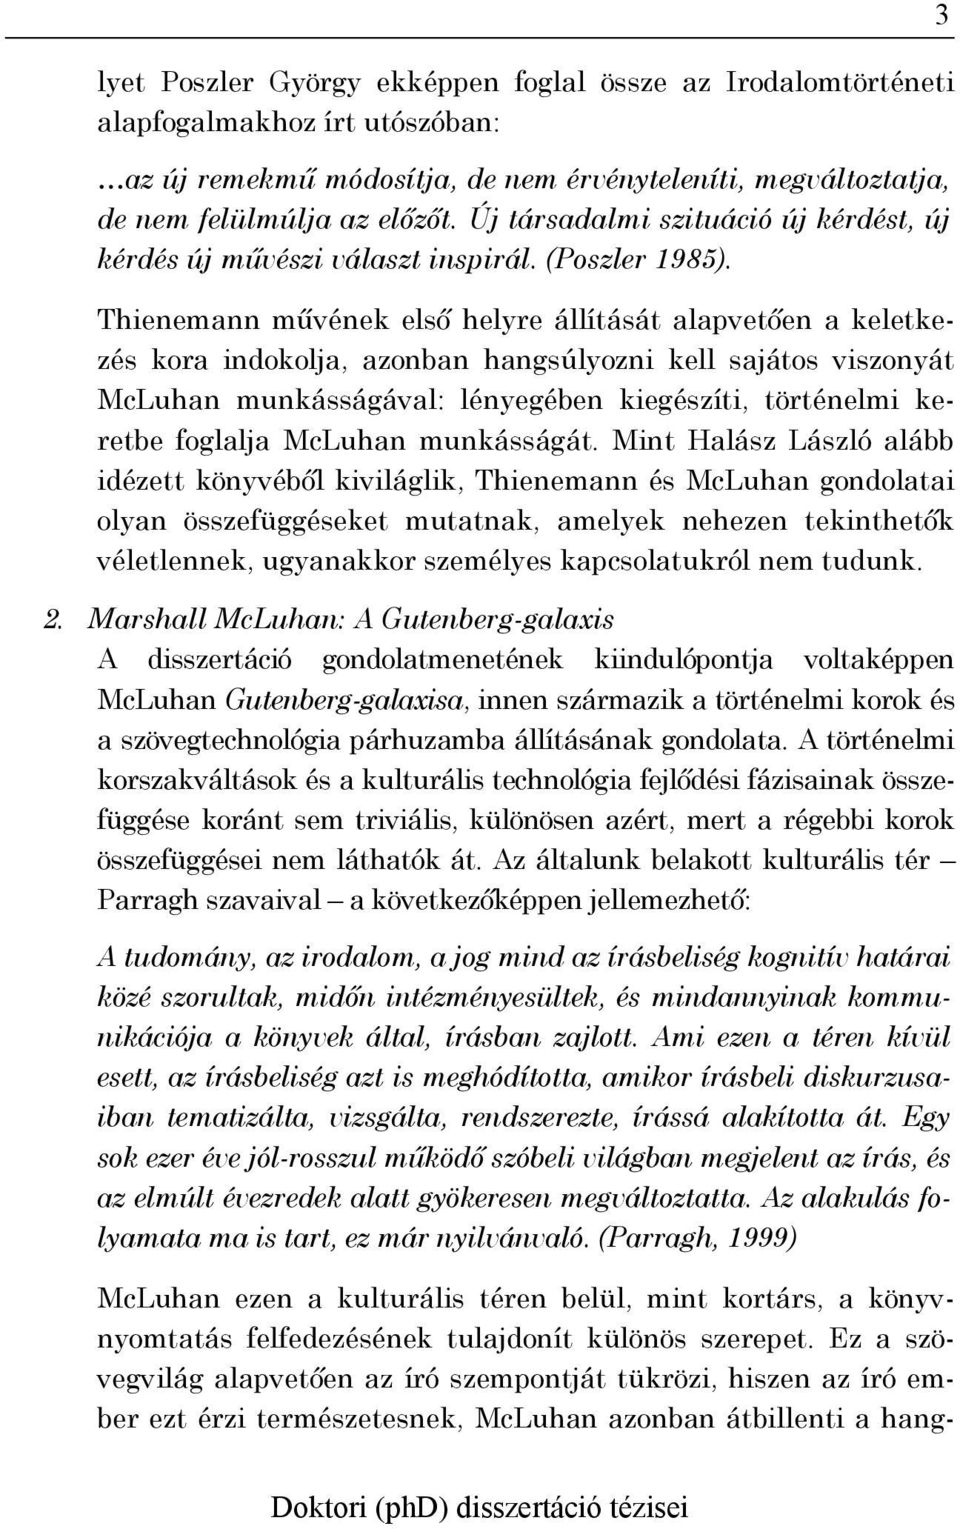 Thienemann művének első helyre állítását alapvetően a keletkezés kora indokolja, azonban hangsúlyozni kell sajátos viszonyát McLuhan munkásságával: lényegében kiegészíti, történelmi keretbe foglalja